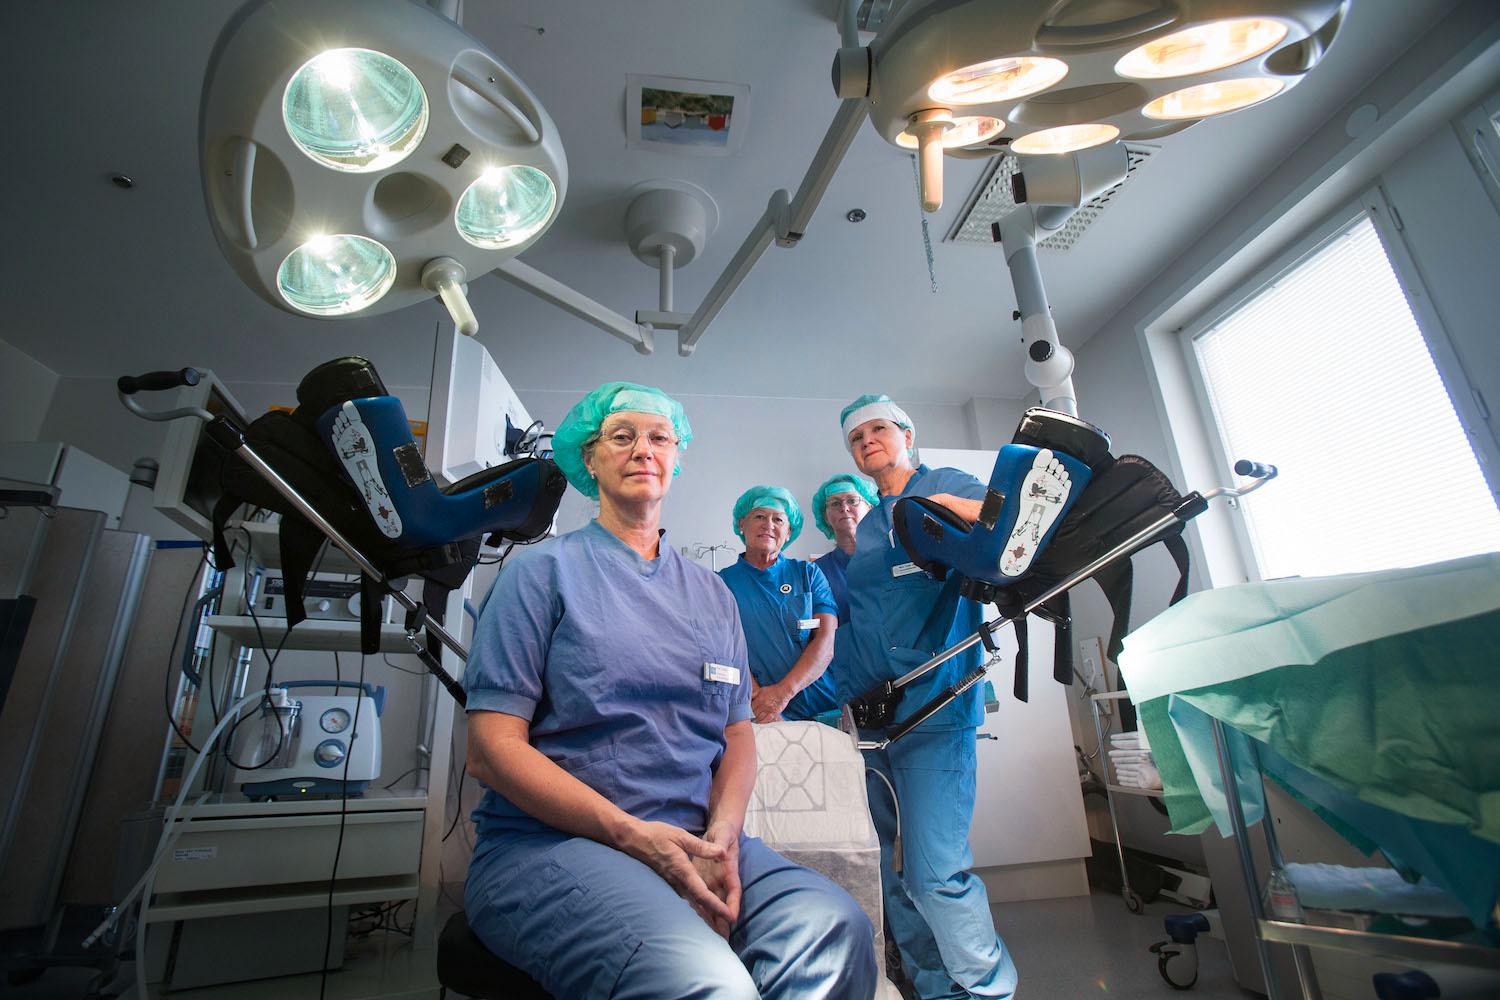 Eva Uustal, expert på förlossningsskador och en pinjonär inom det förebyggande arbetet för att minska bristningarna, i en operationssal vid Linköpings universitetssjukhus där hon arbetar som överläkare och gynkirurg med att bland annat laga förlossningsskador.